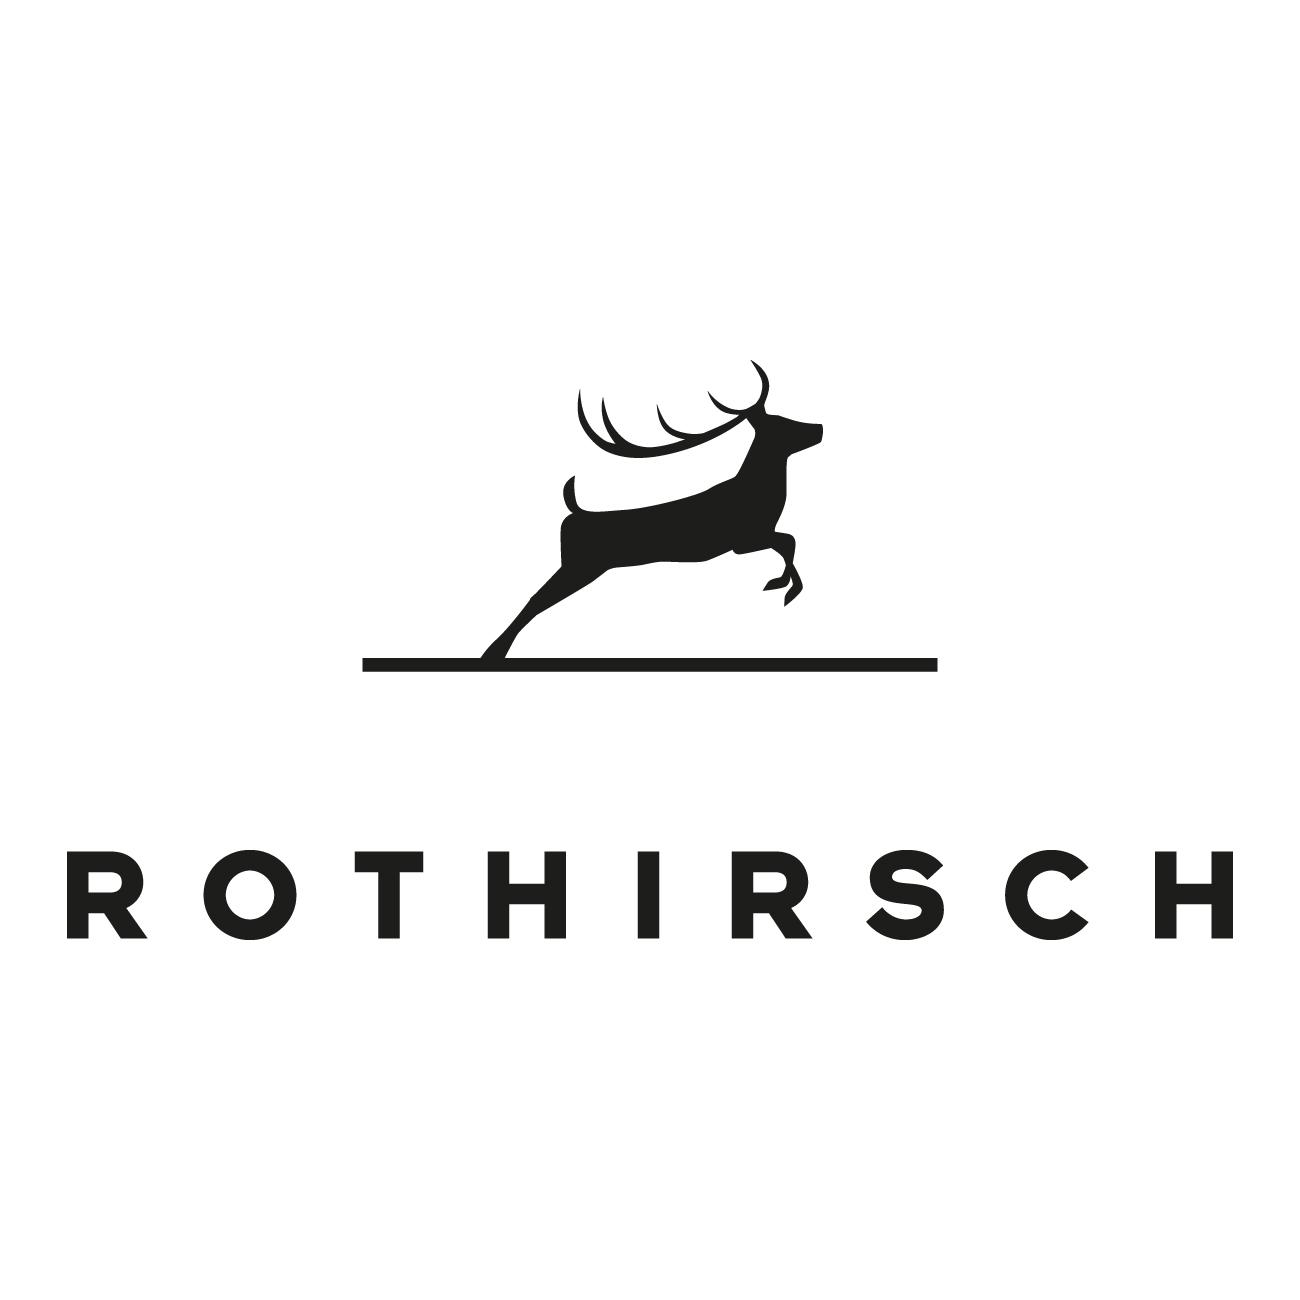 ROTHIRSCH